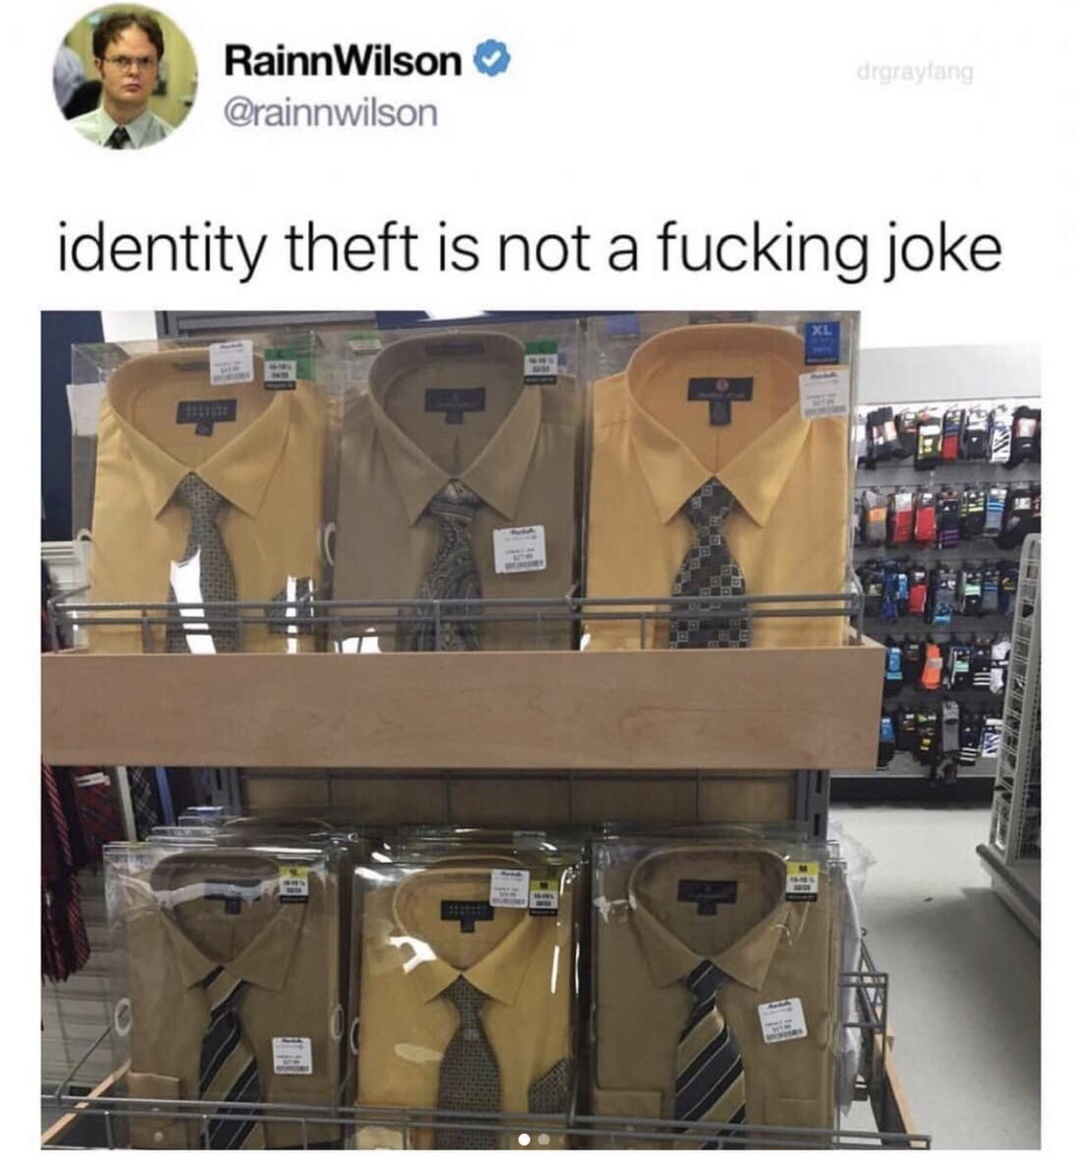 dwight schrute collection - Rainn Wilson identity theft is not a fucking joke Nal